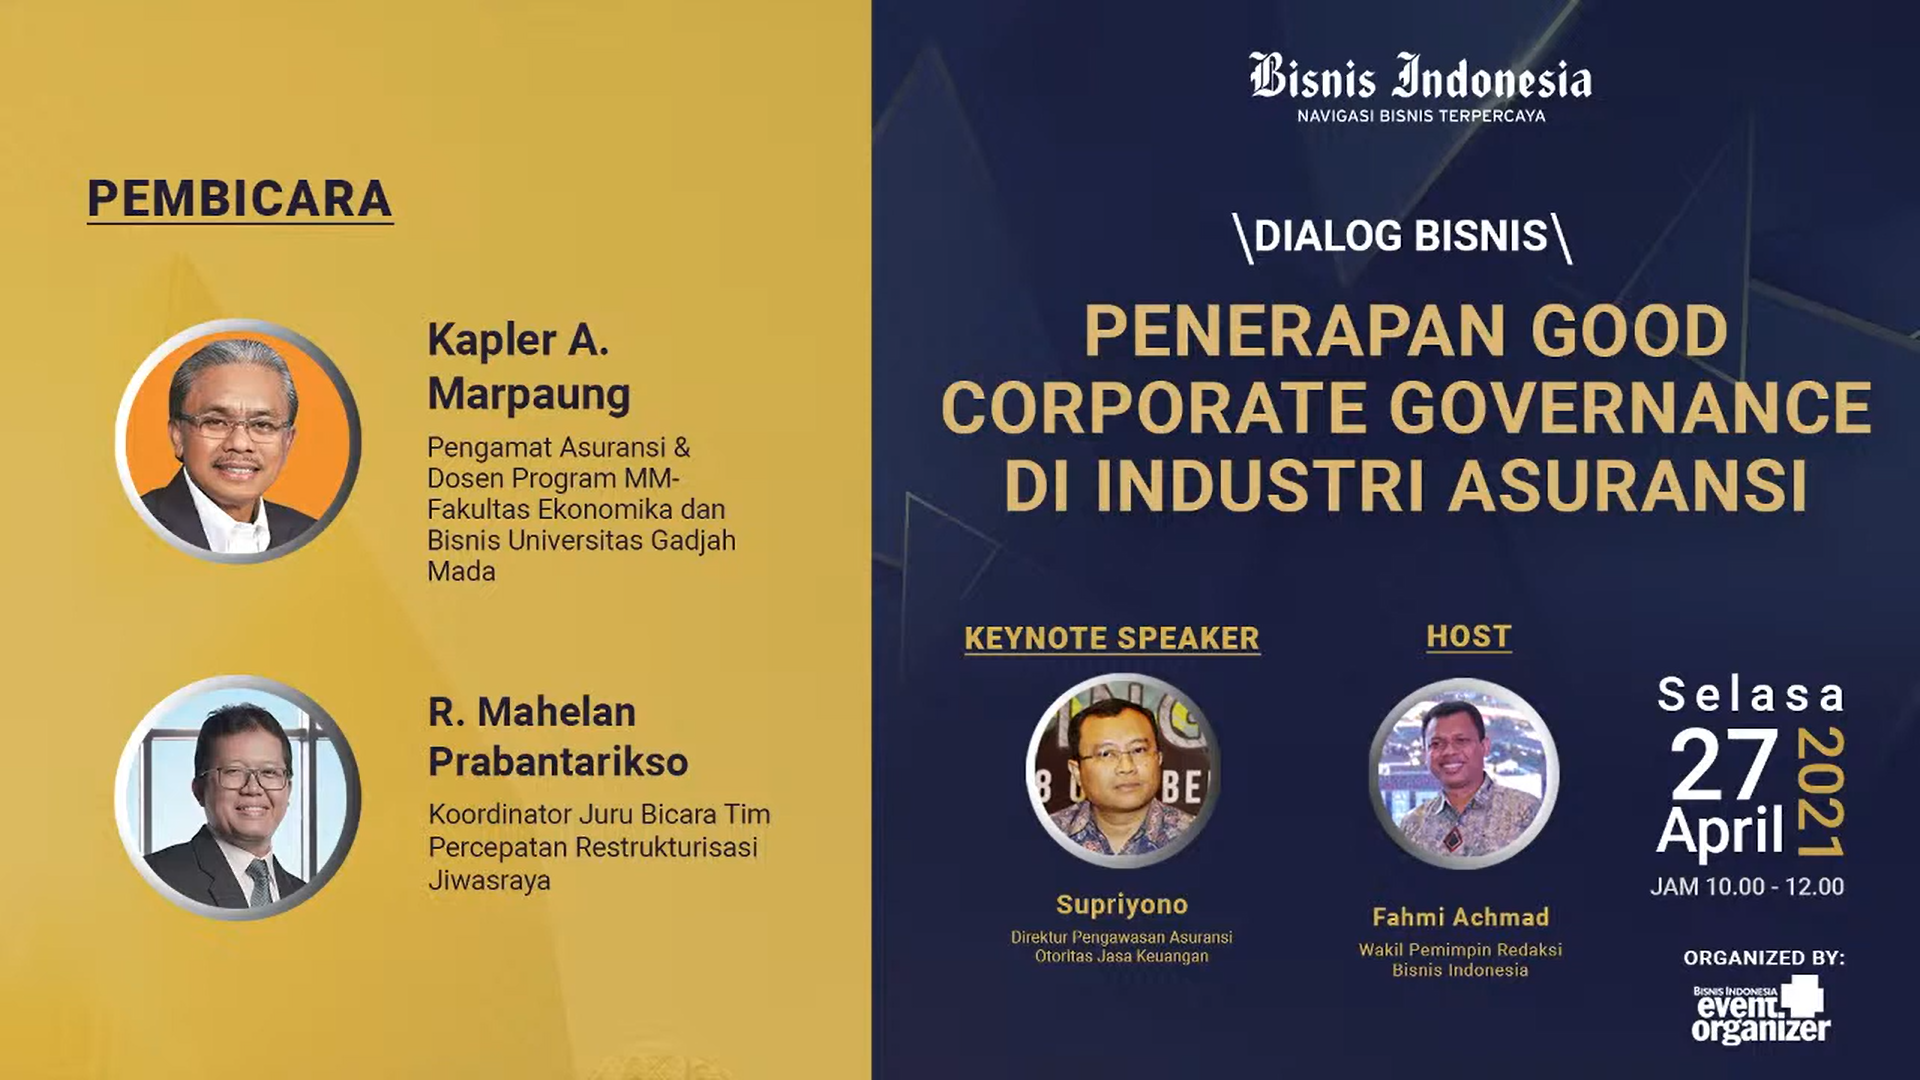 Webinar Dialog Bisnis “Penerapan Good Corporate Governance di Industri Asuransi”